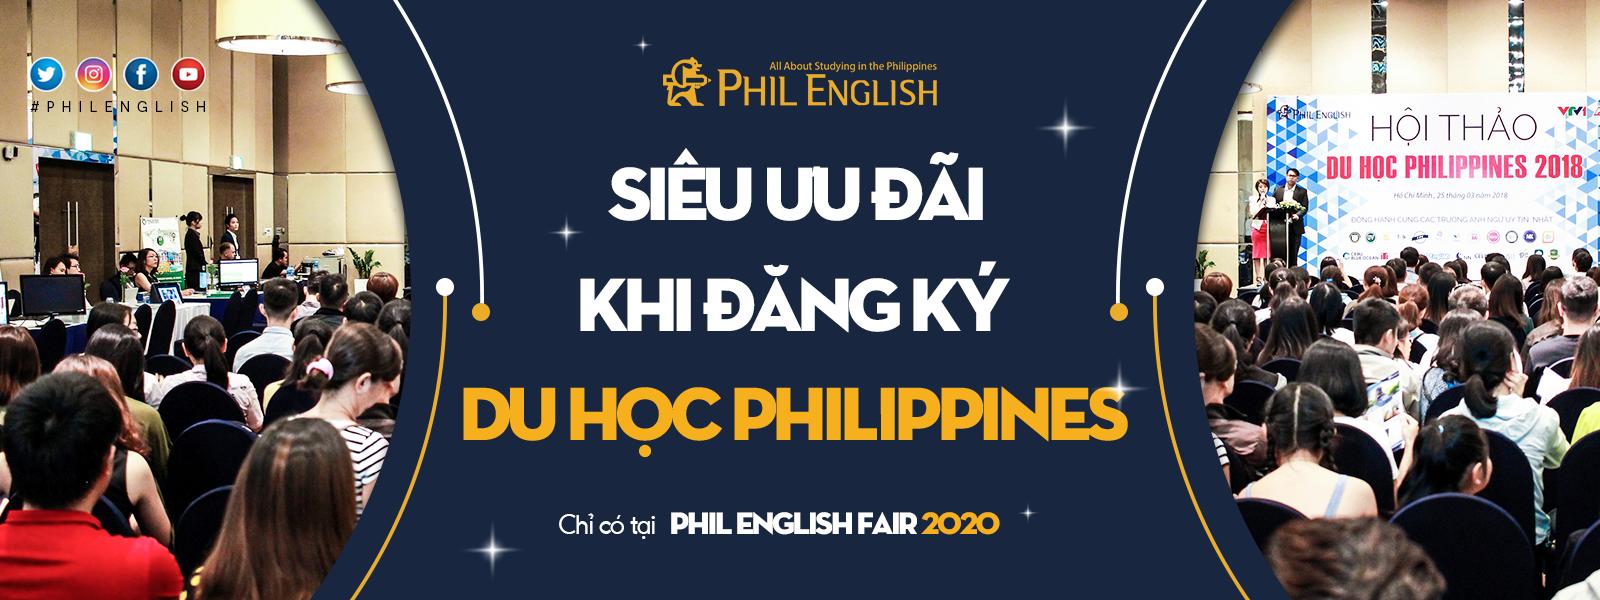 phil-english-fair-2020